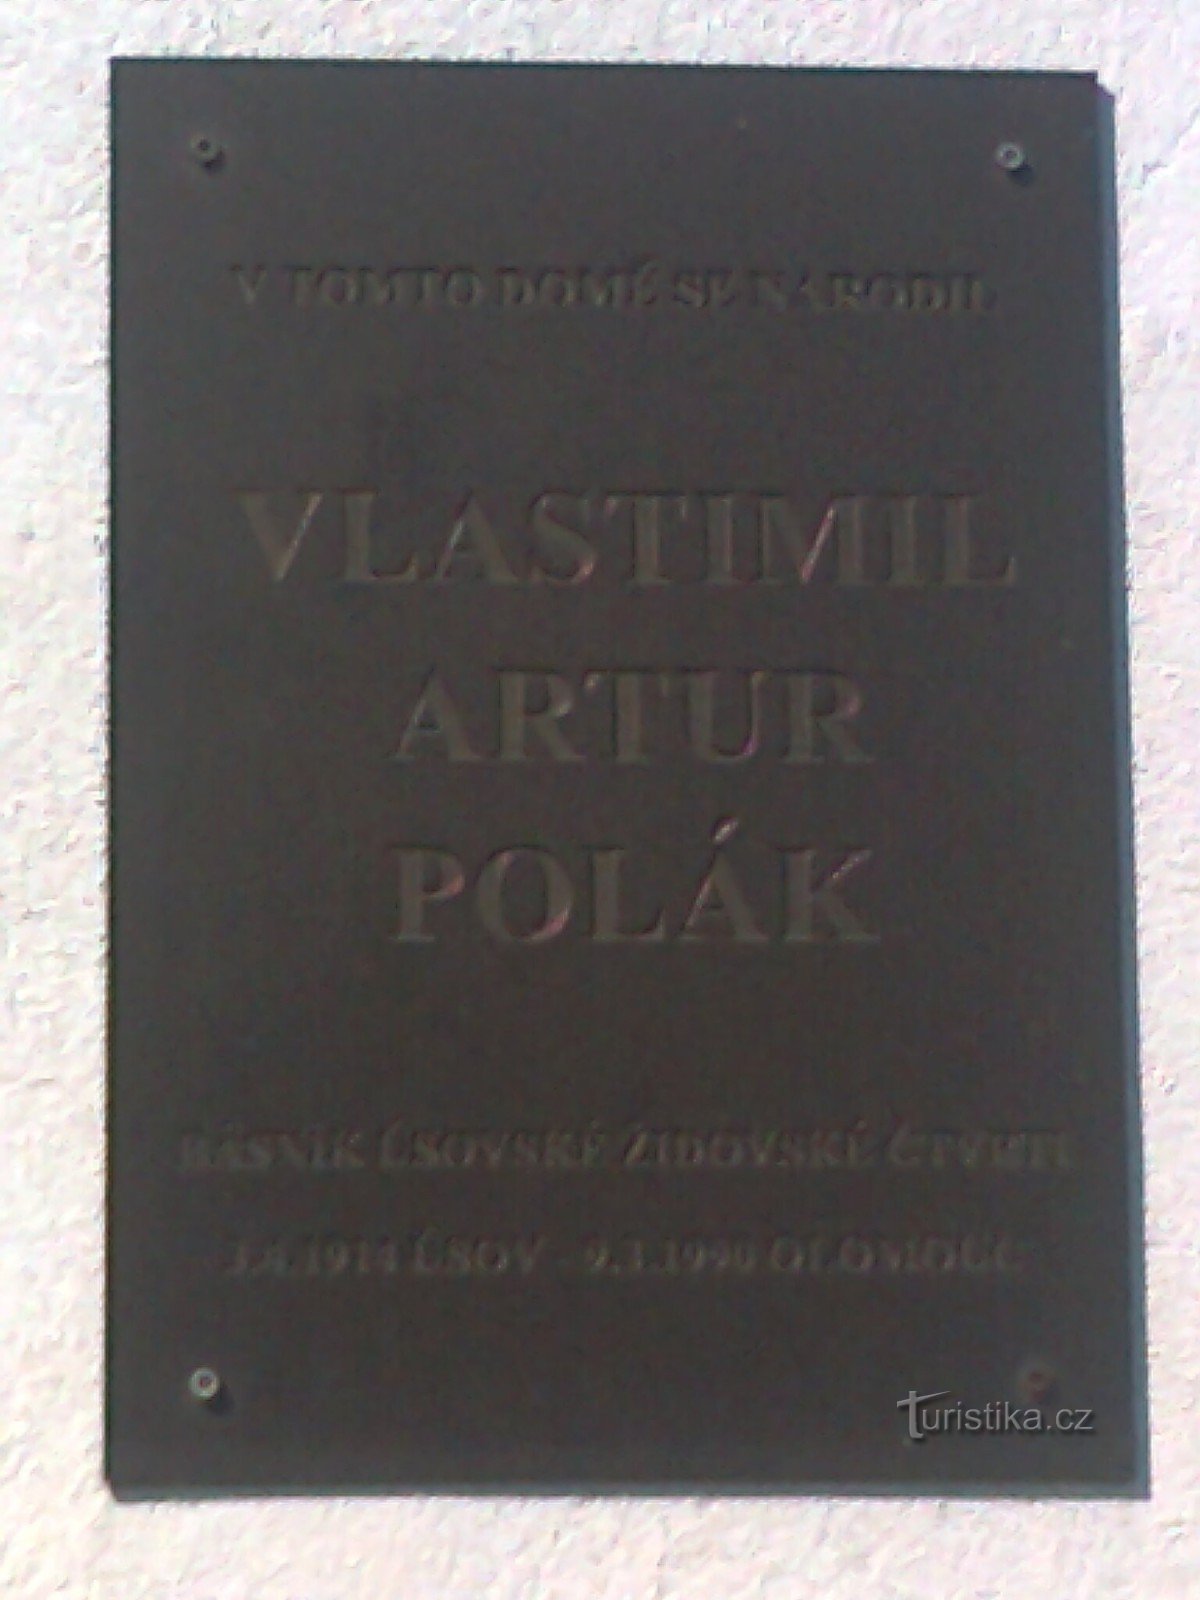 Úsov - el lugar de nacimiento del poeta y novelista Vlastimil Artur Polák